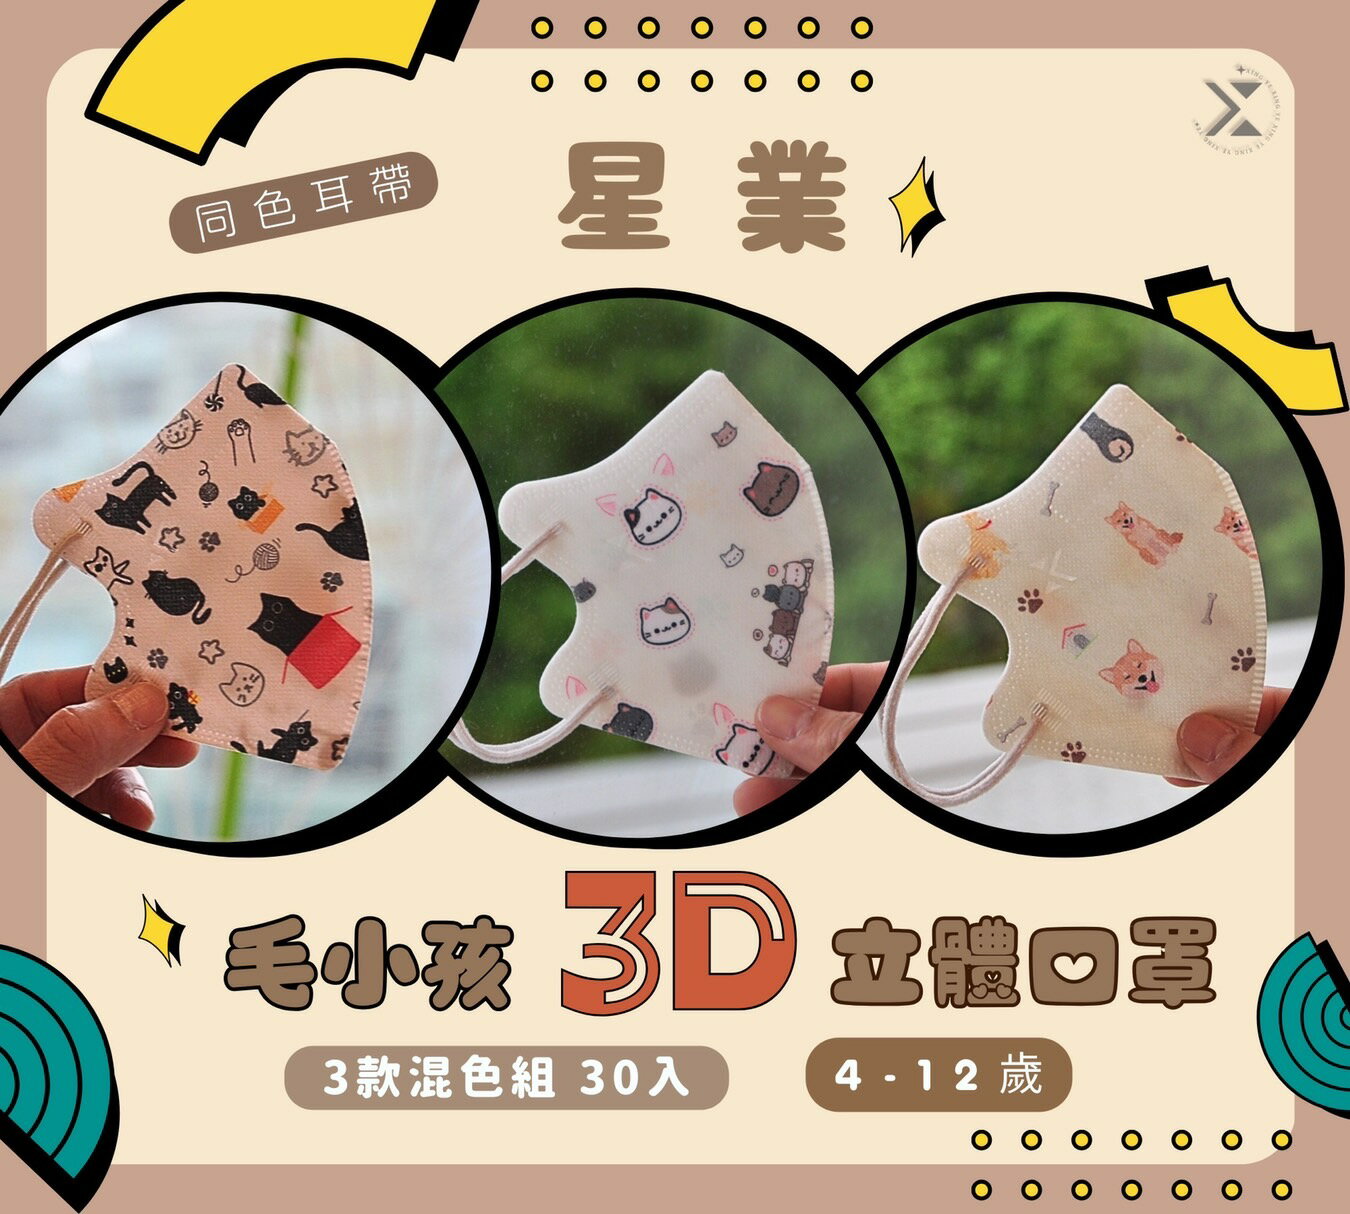 【星業毛小孩3】星業-兒童3D立體防護口罩 30片入 一盒三色 每色10片 C型口罩 兒童立體口罩 毛孩系列-3